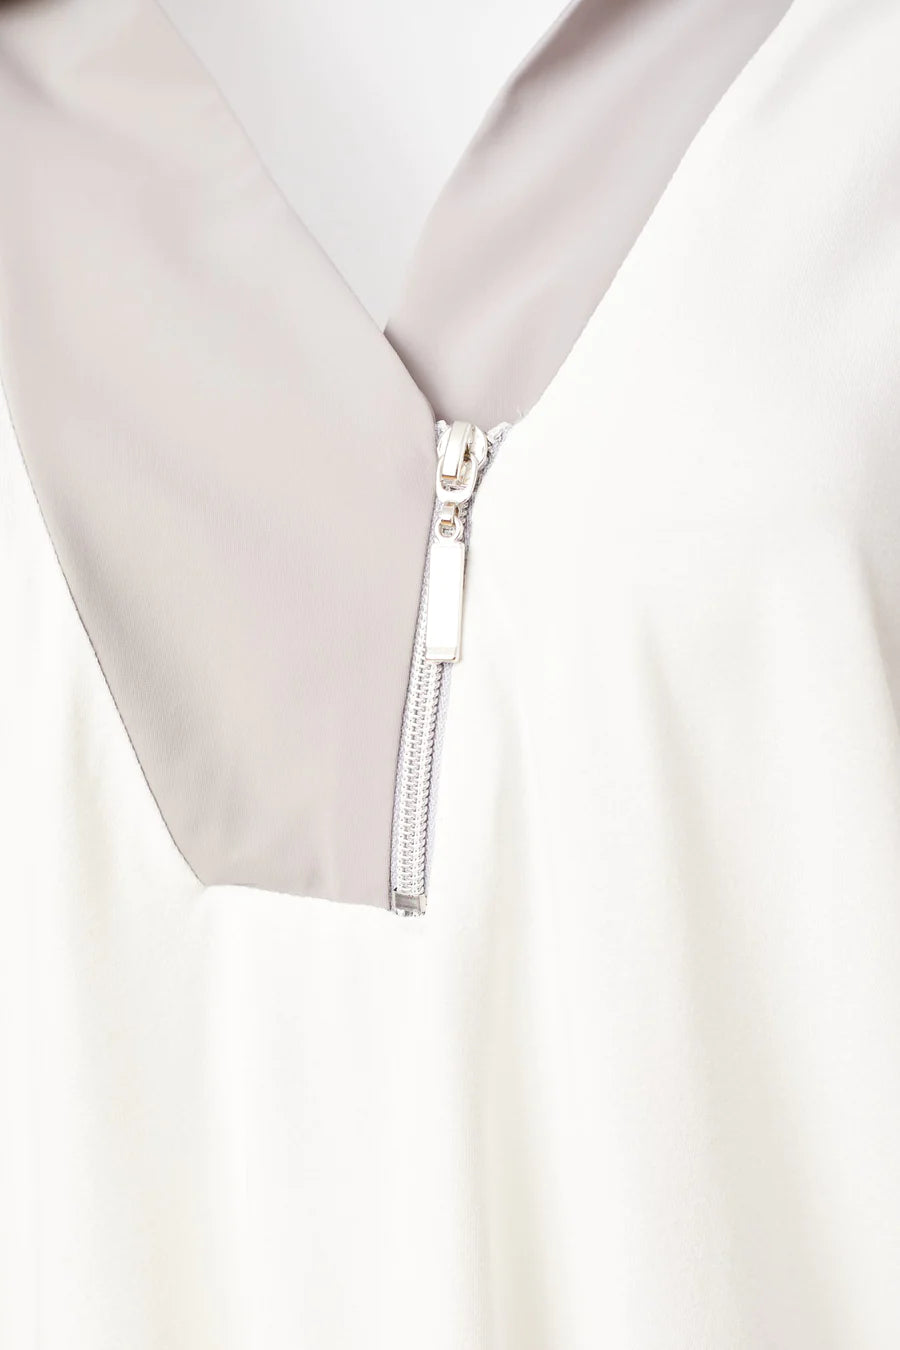 NAYA - Jersey Zip Top/Collar 5